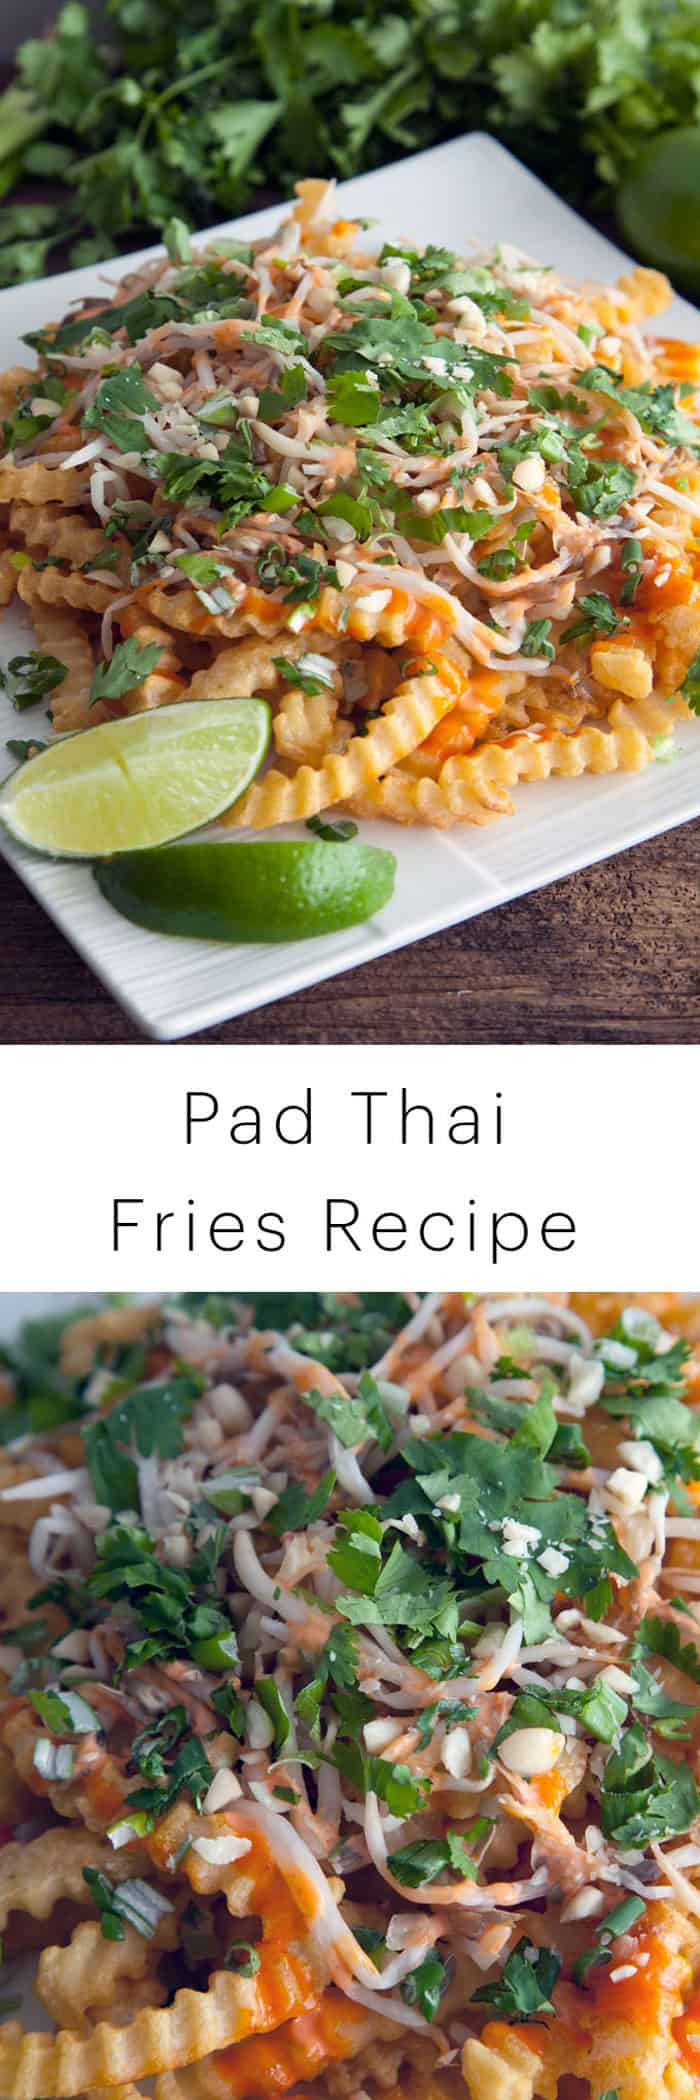 Pad Thai Fries Recipe